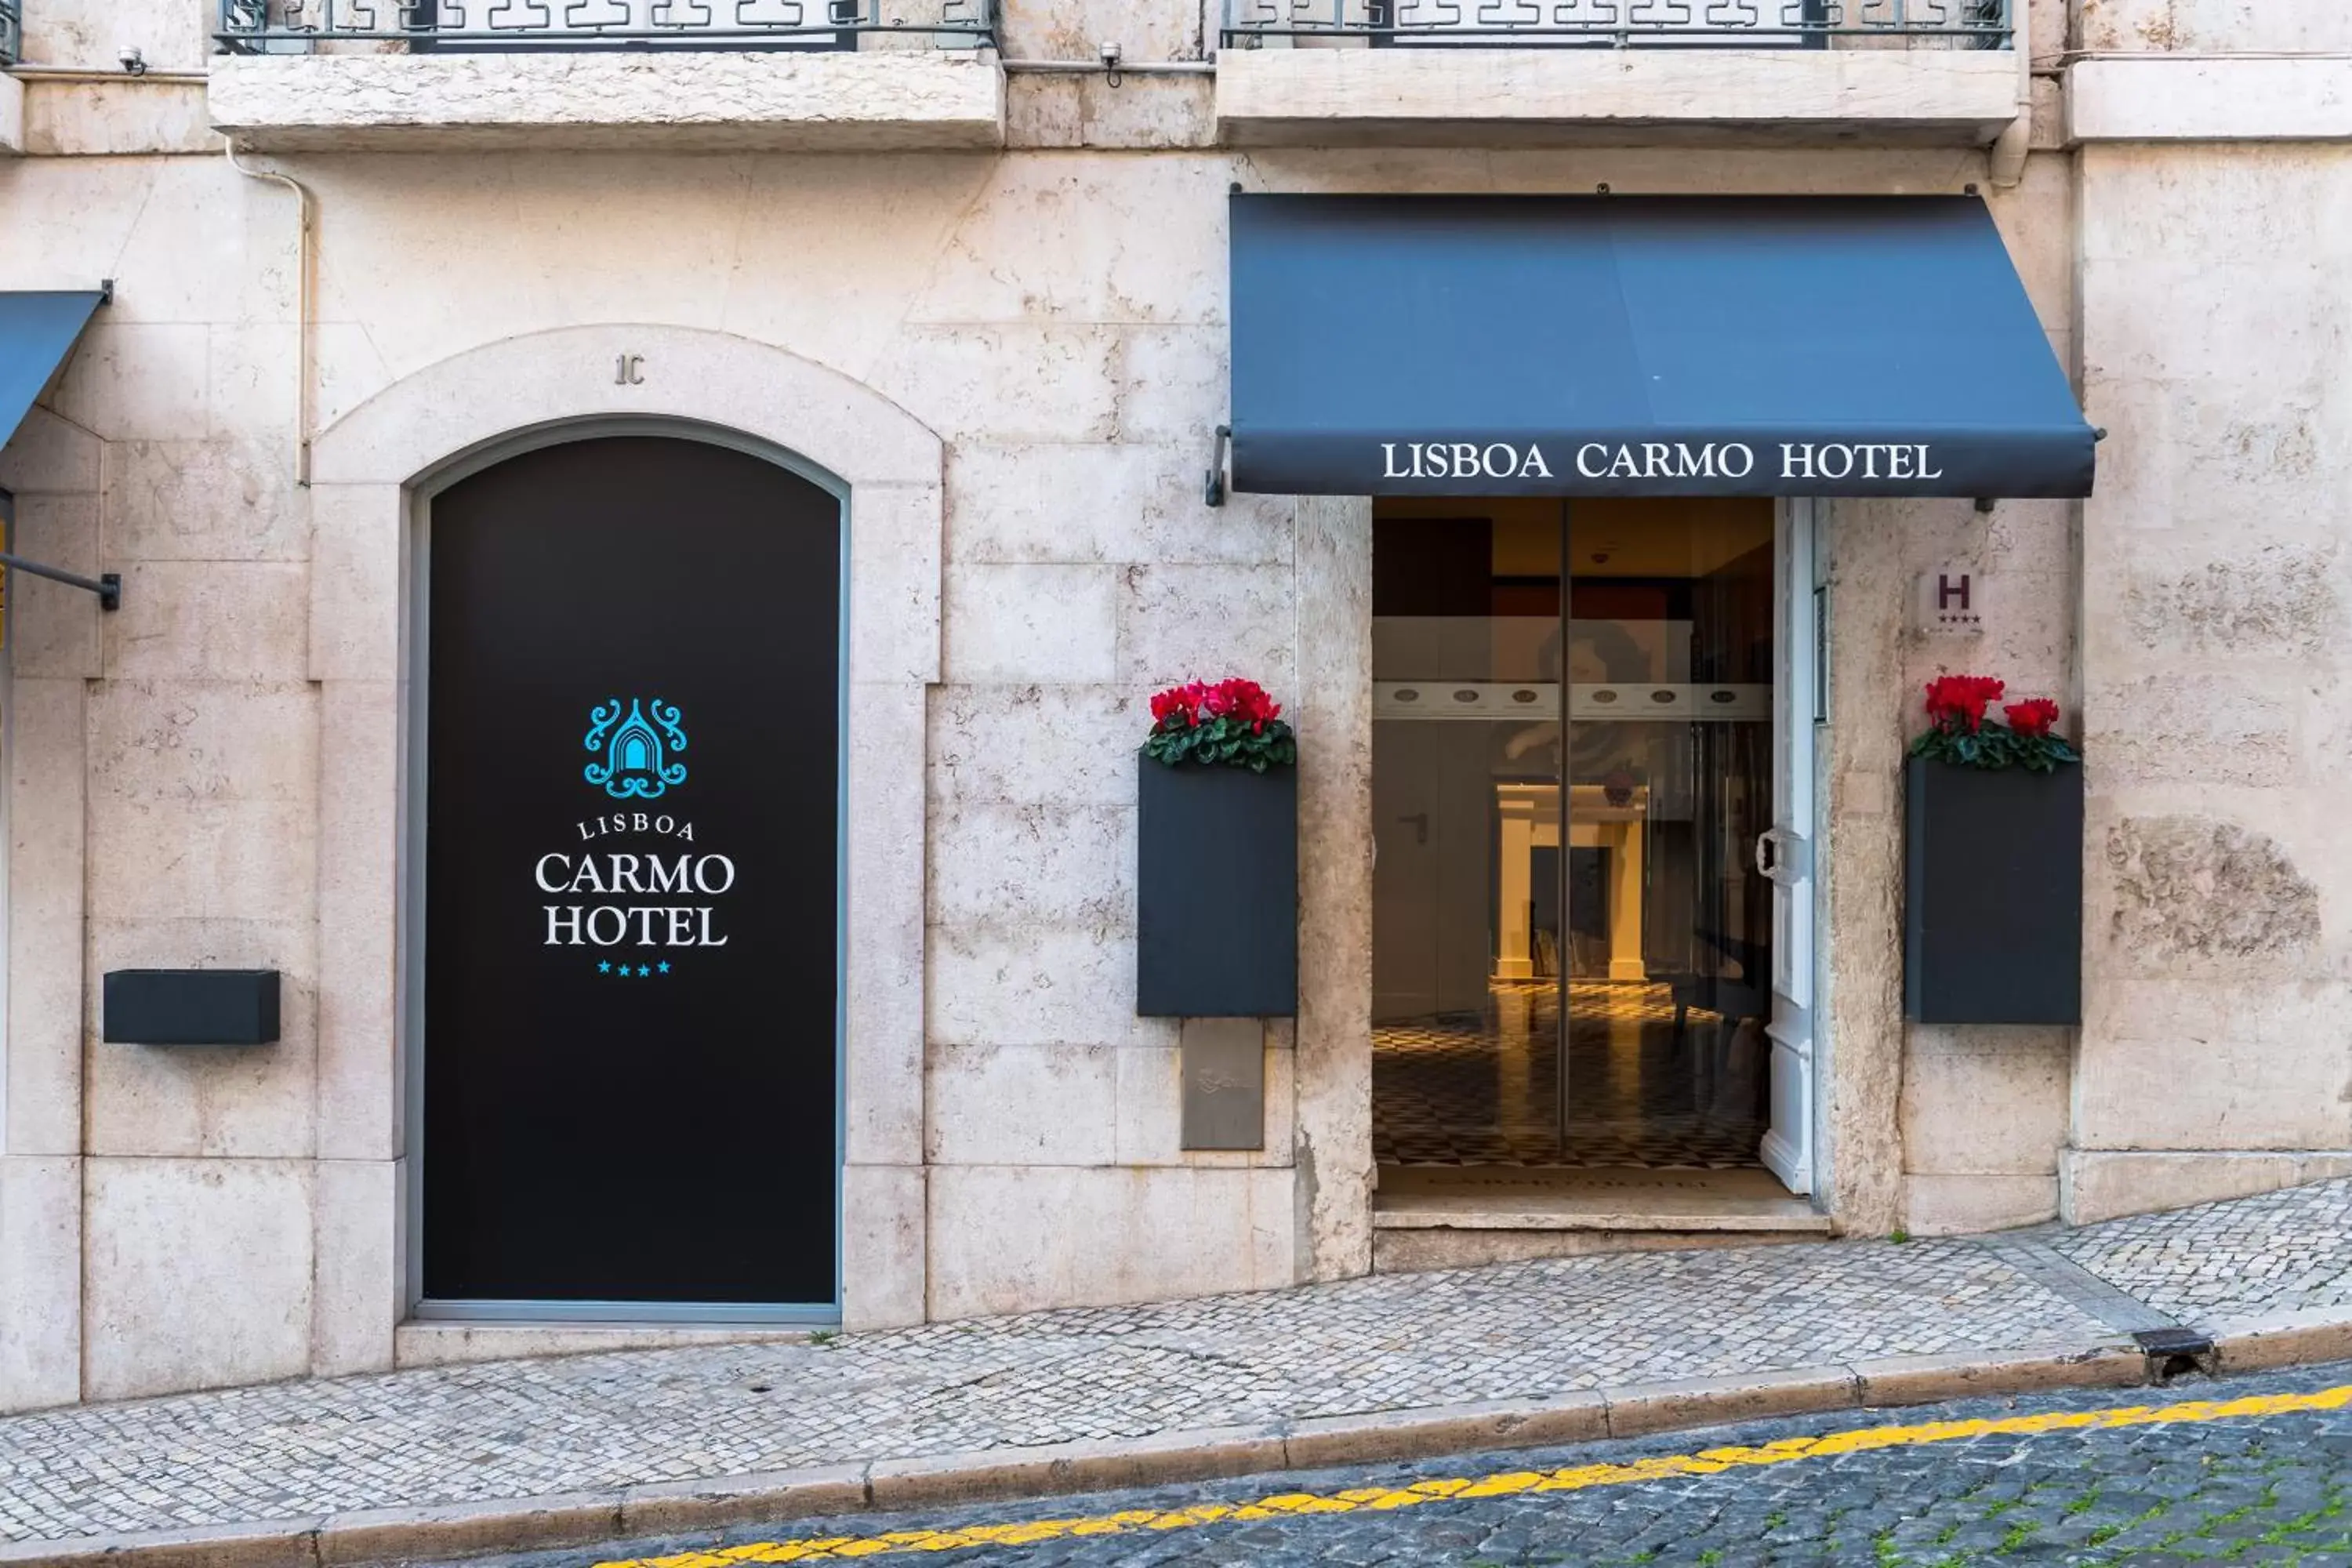 Facade/entrance in Lisboa Carmo Hotel